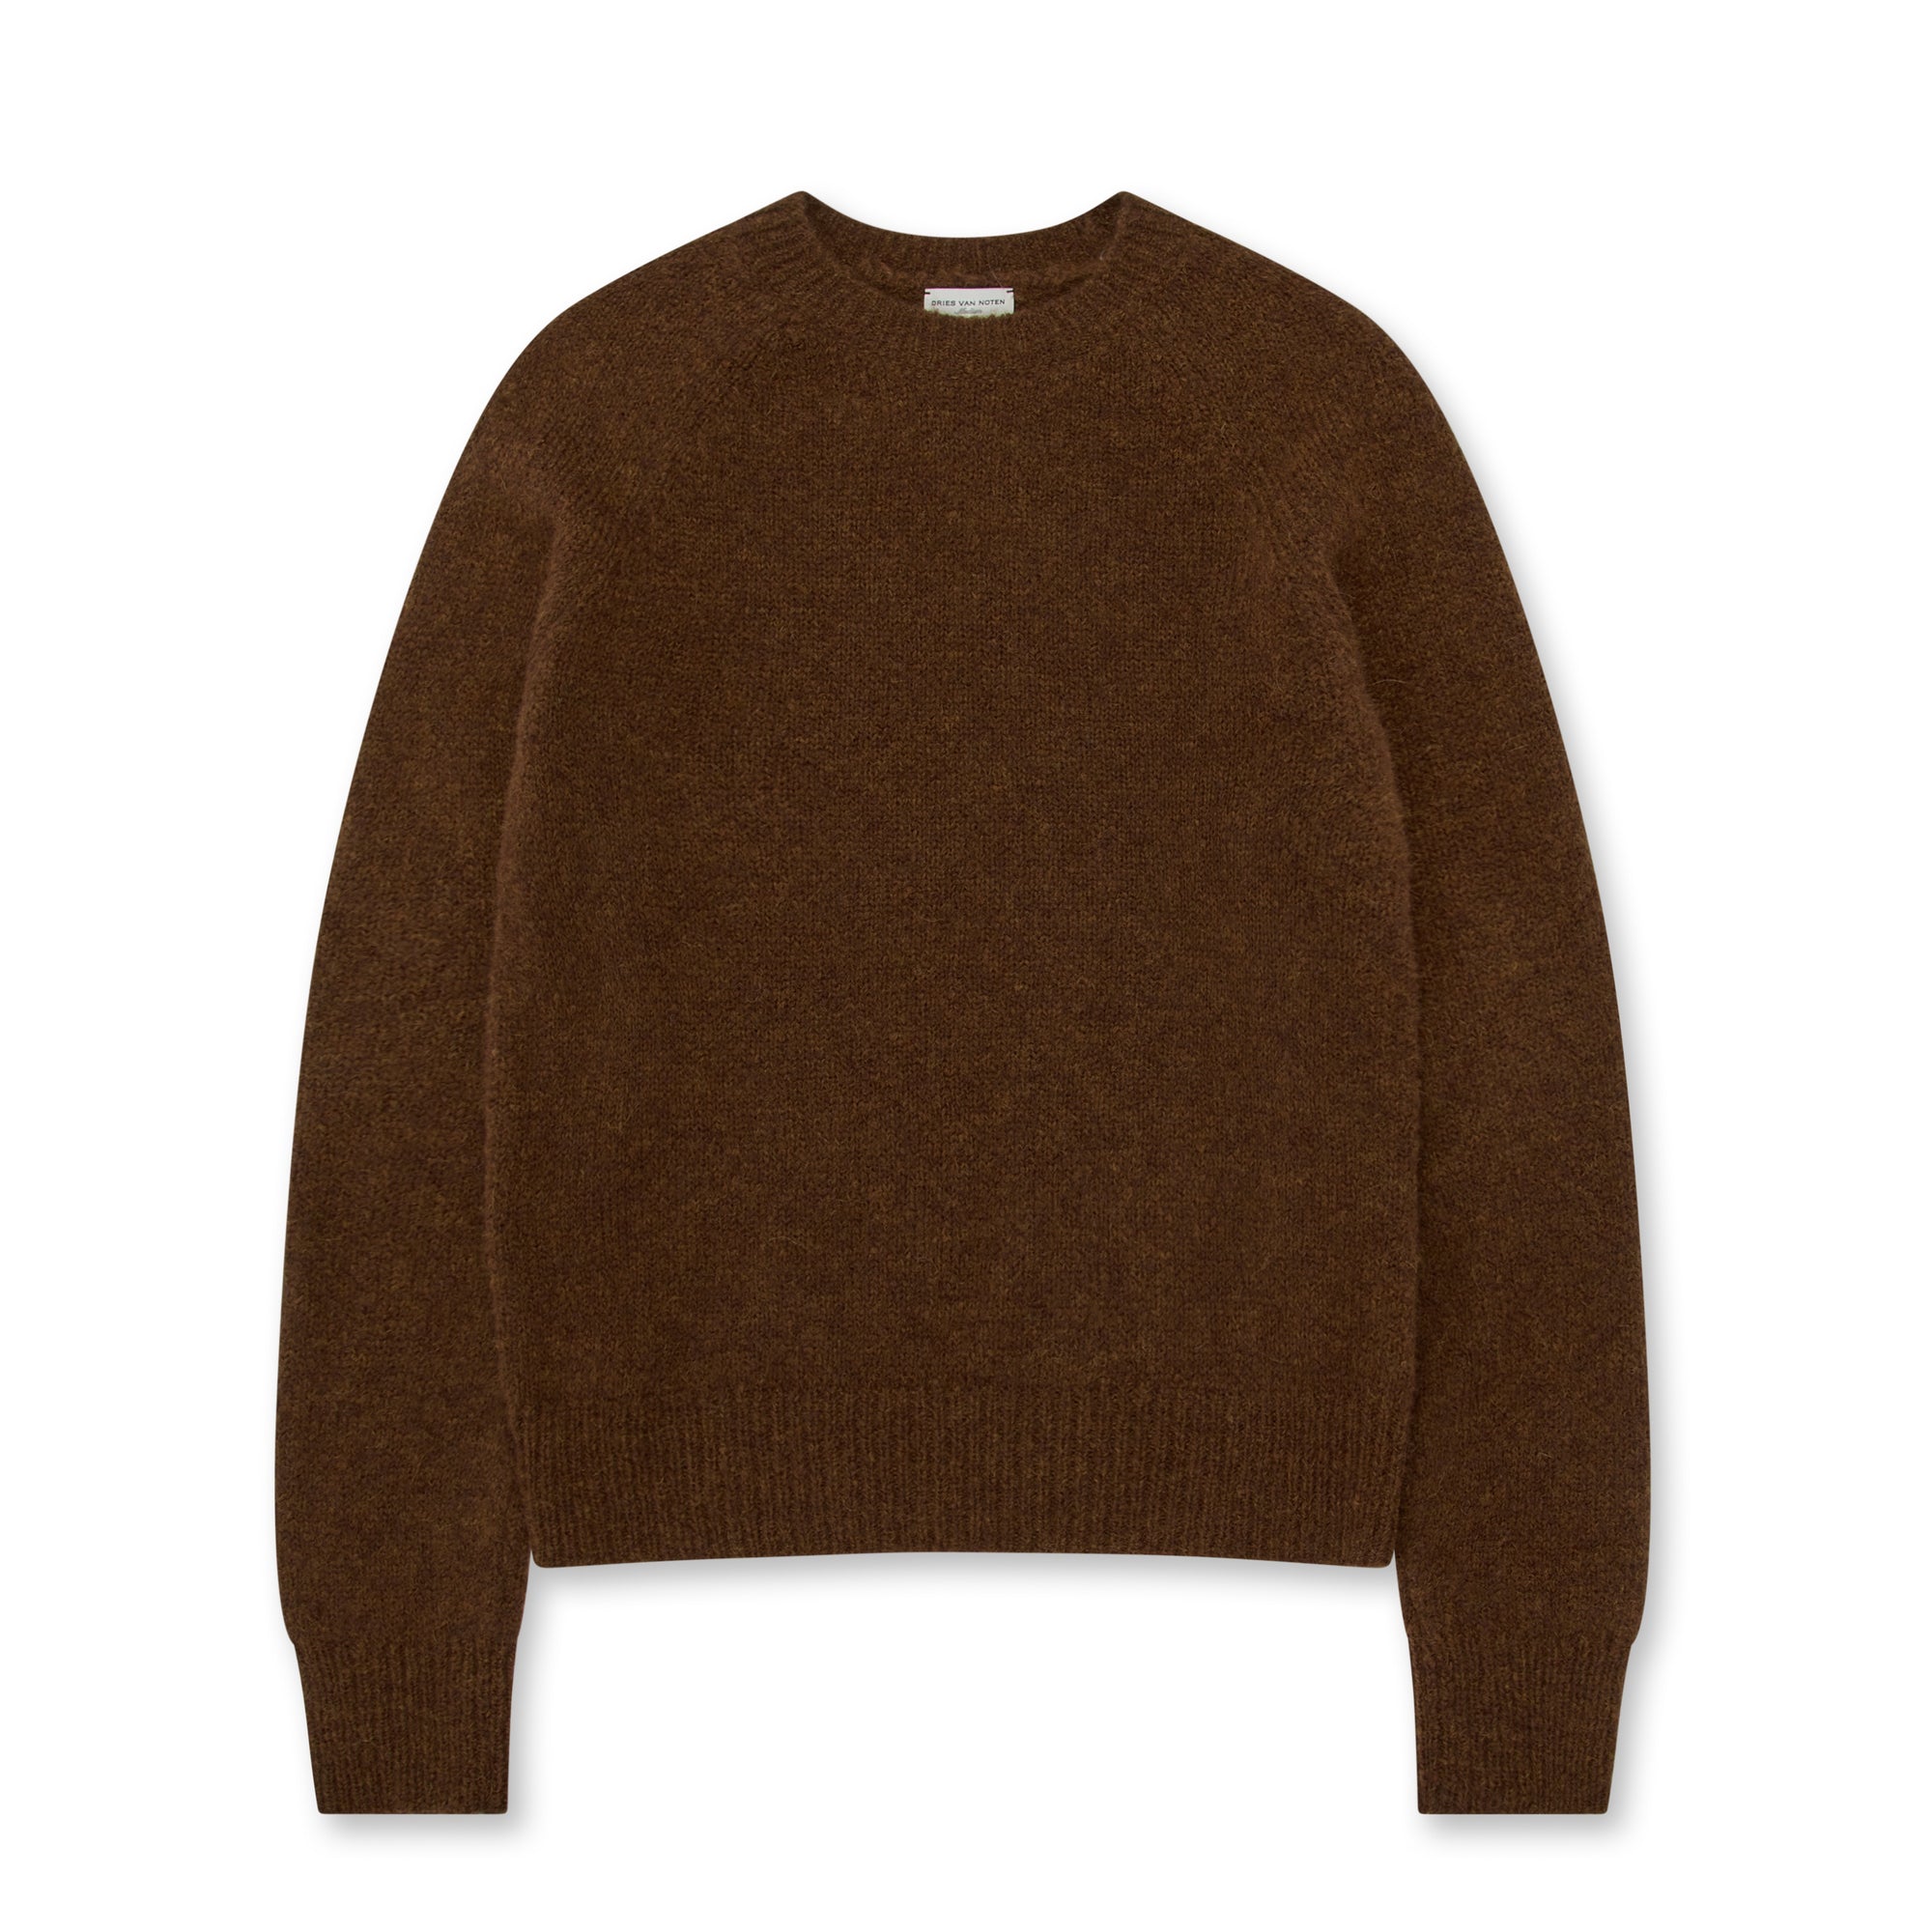 Dries Van Noten - Men’s Wool Sweater - (Brown) view 1